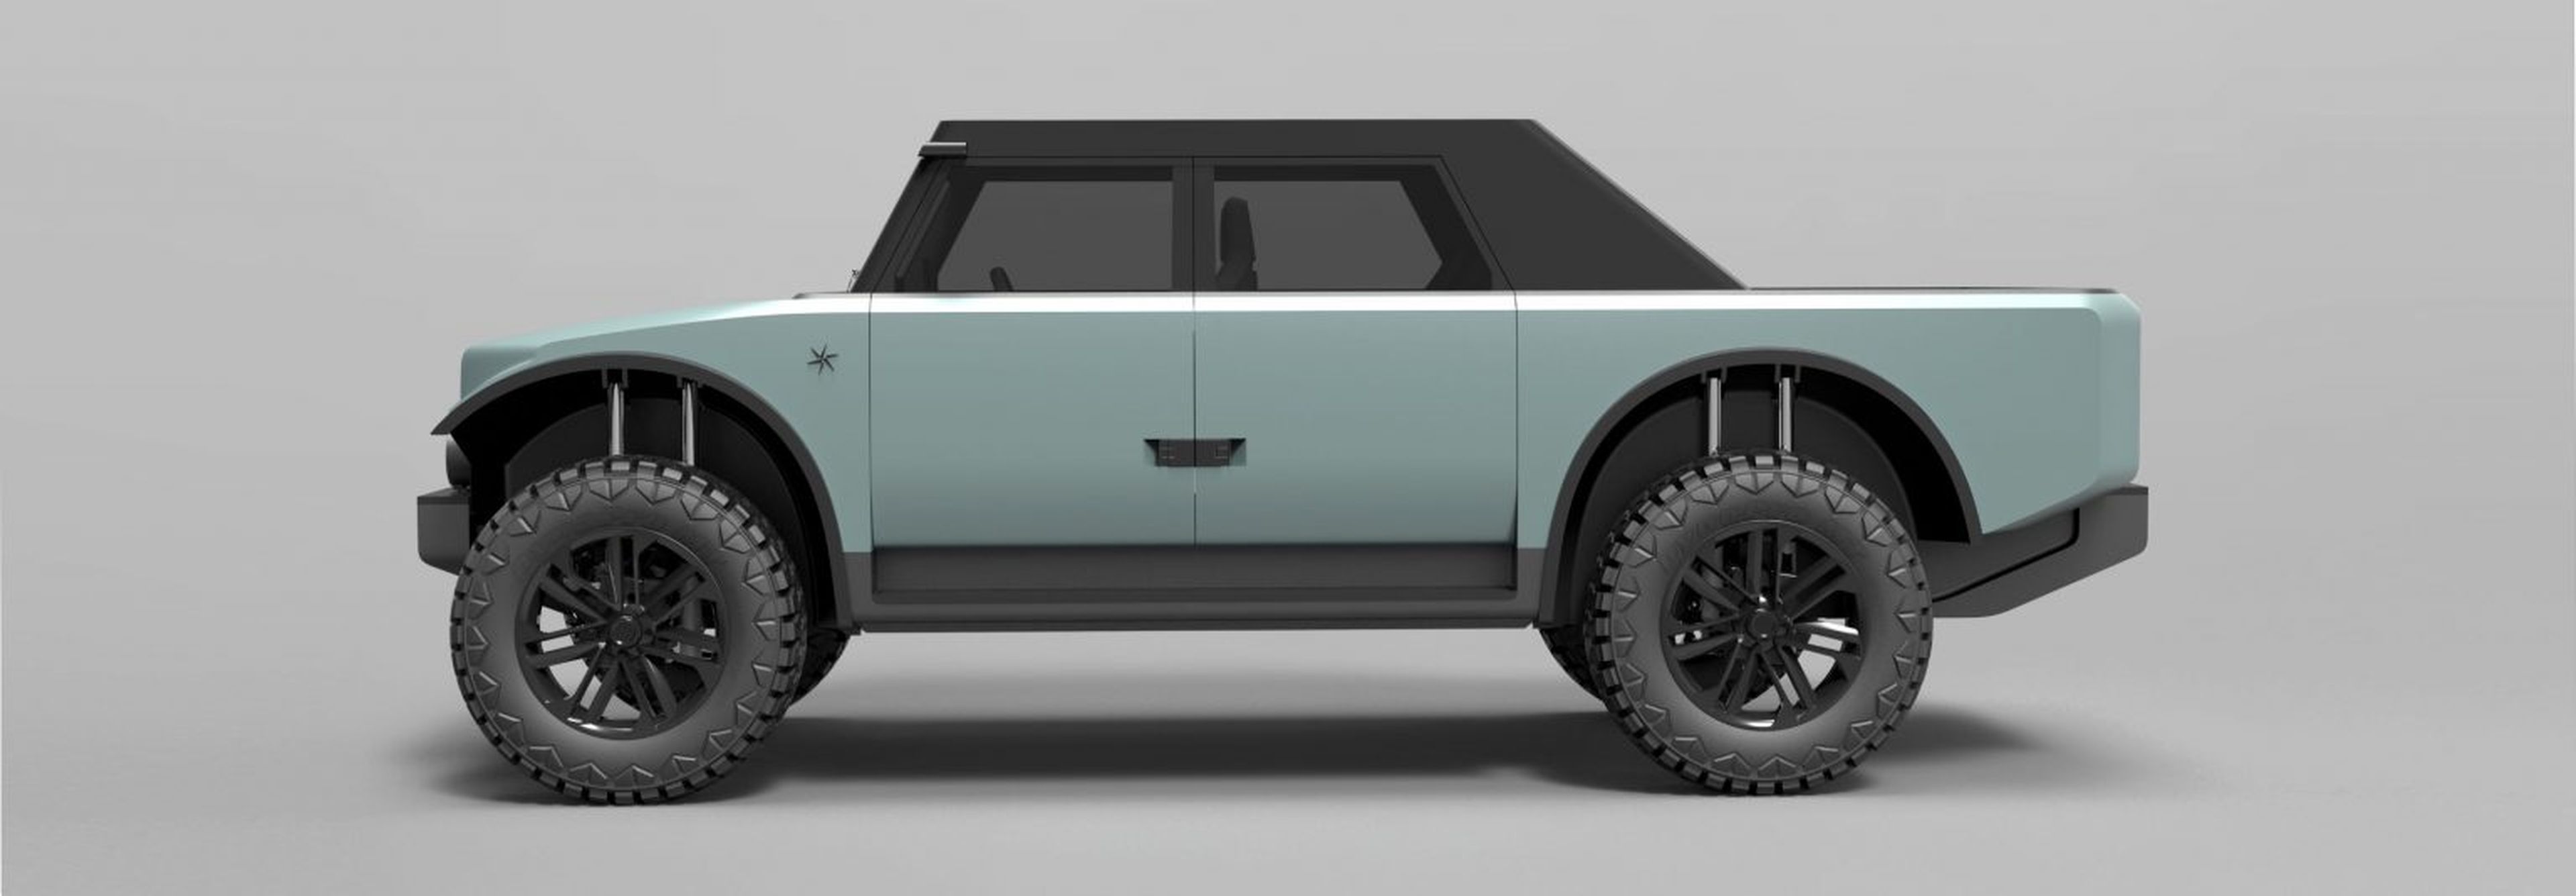 Concepto del vehículo Fering Pioneer